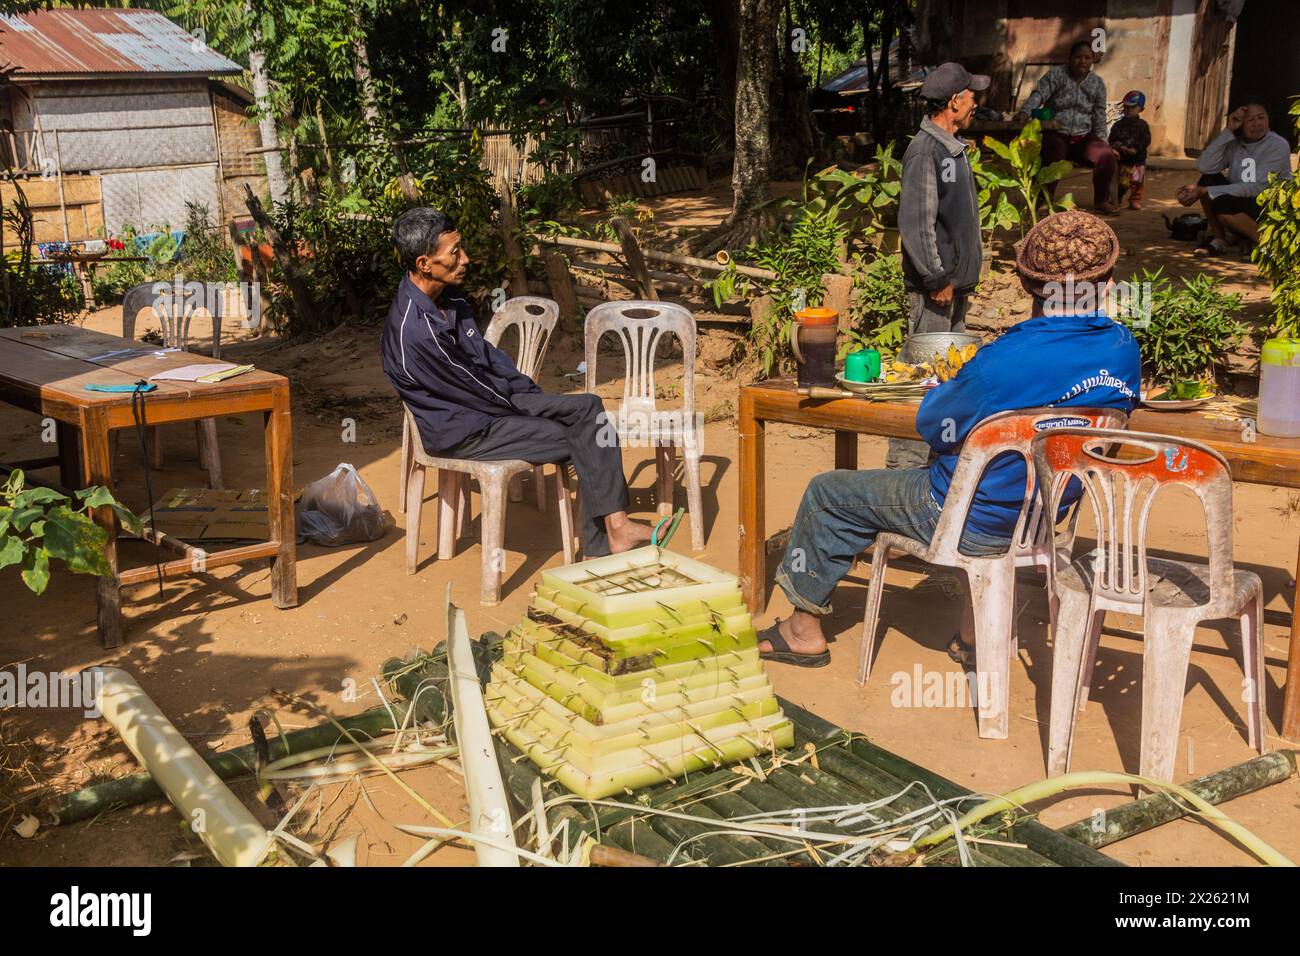 DONKHOUN, LAOS - 27 NOVEMBRE 2019: Abitanti del villaggio che preparano una nave galleggiante per placare gli spiriti nel villaggio di Donkhoun (Done Khoun) vicino a Nong Khiaw, Laos Foto Stock